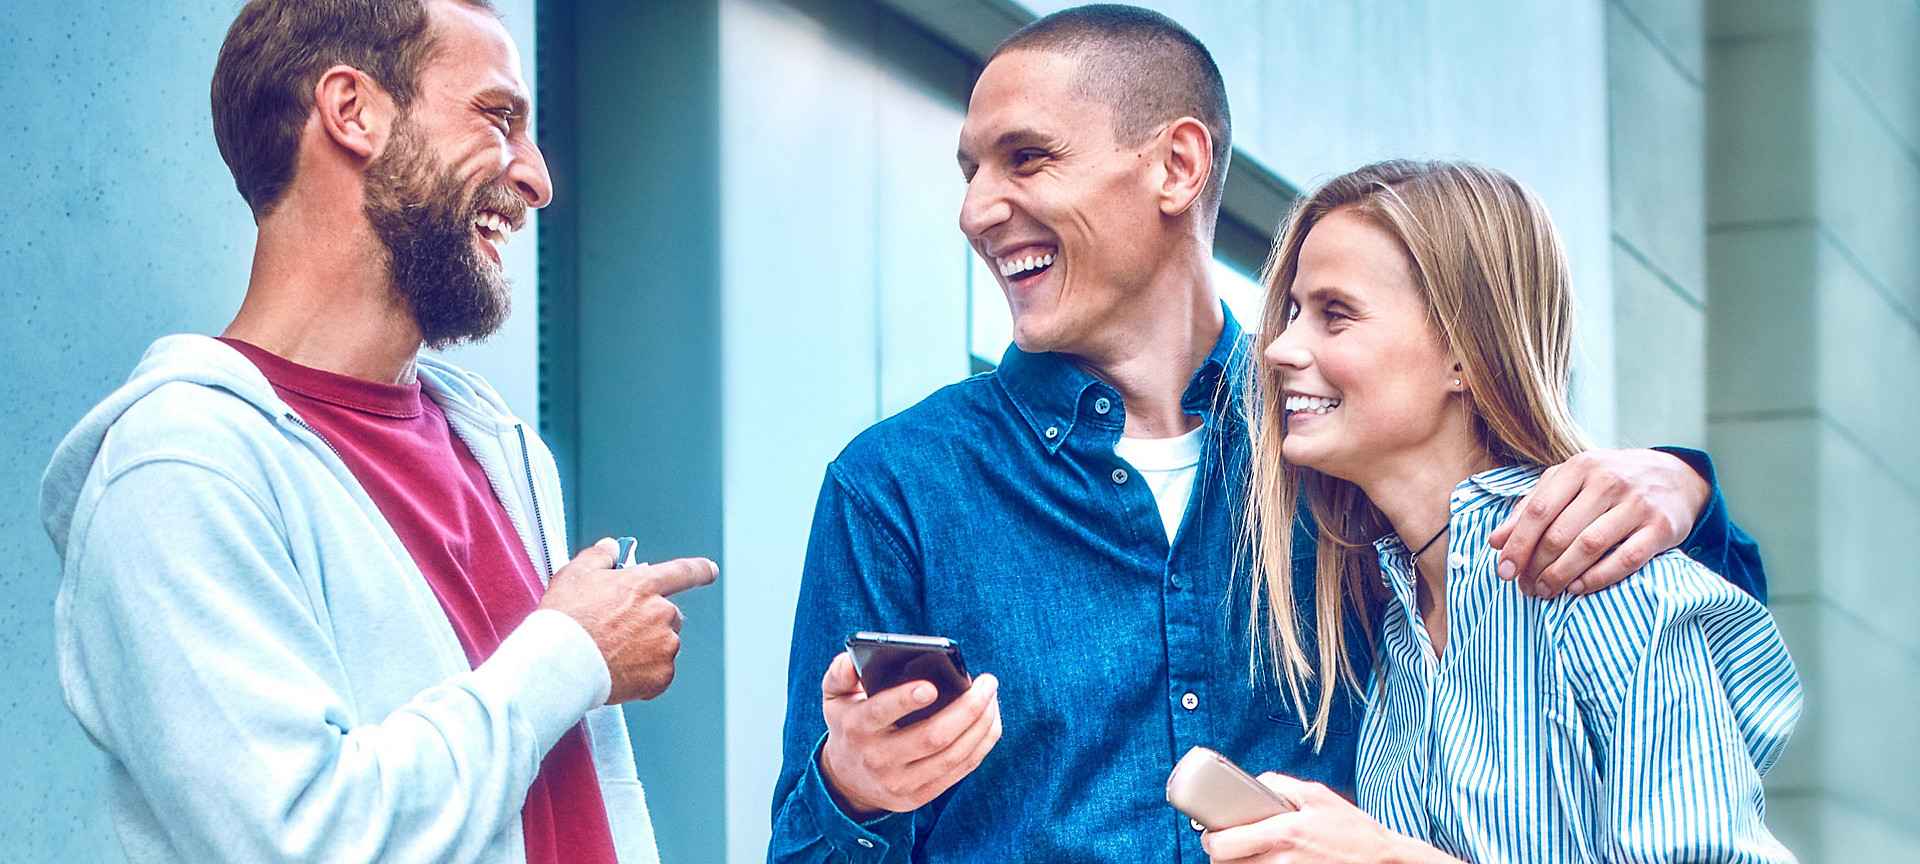 Dos personas que sostienen dispositivos IQOS ILUMA sonríen mientras su amiga mira la aplicación de IQOS en su teléfono móvil.